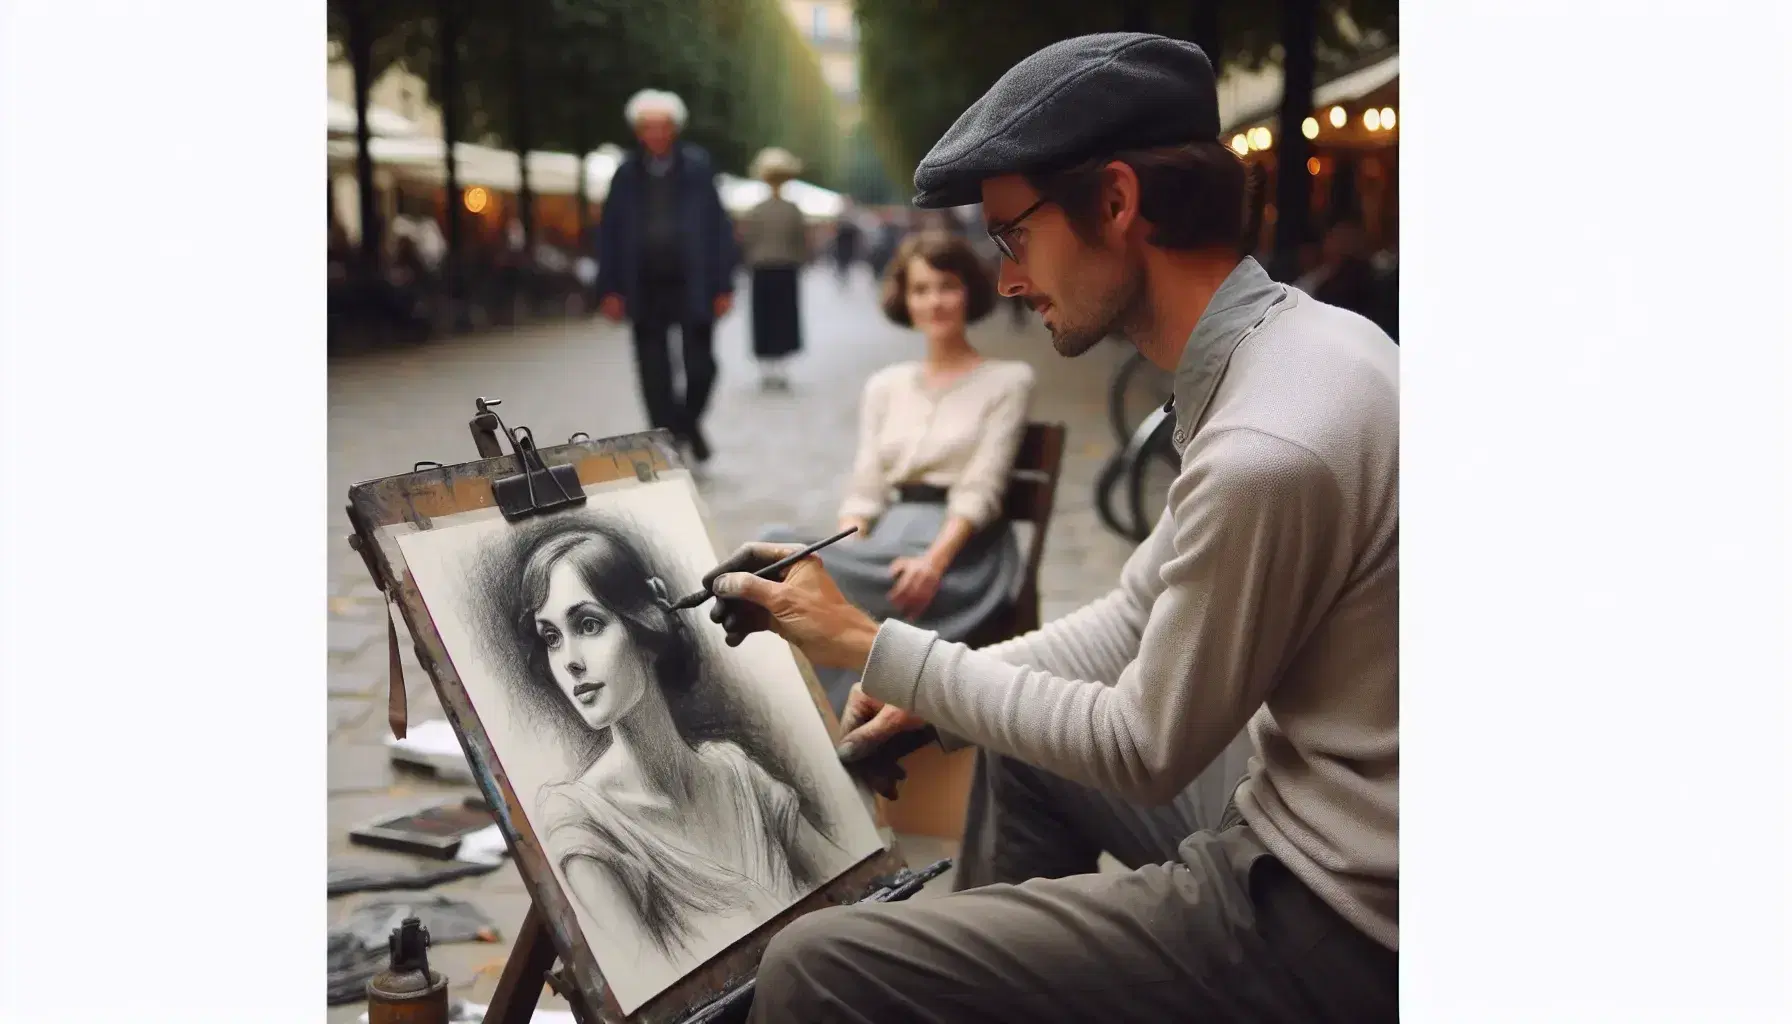 Artista di strada realizza ritratto a carboncino di donna seduta all'aperto, con persone sfocate sullo sfondo.